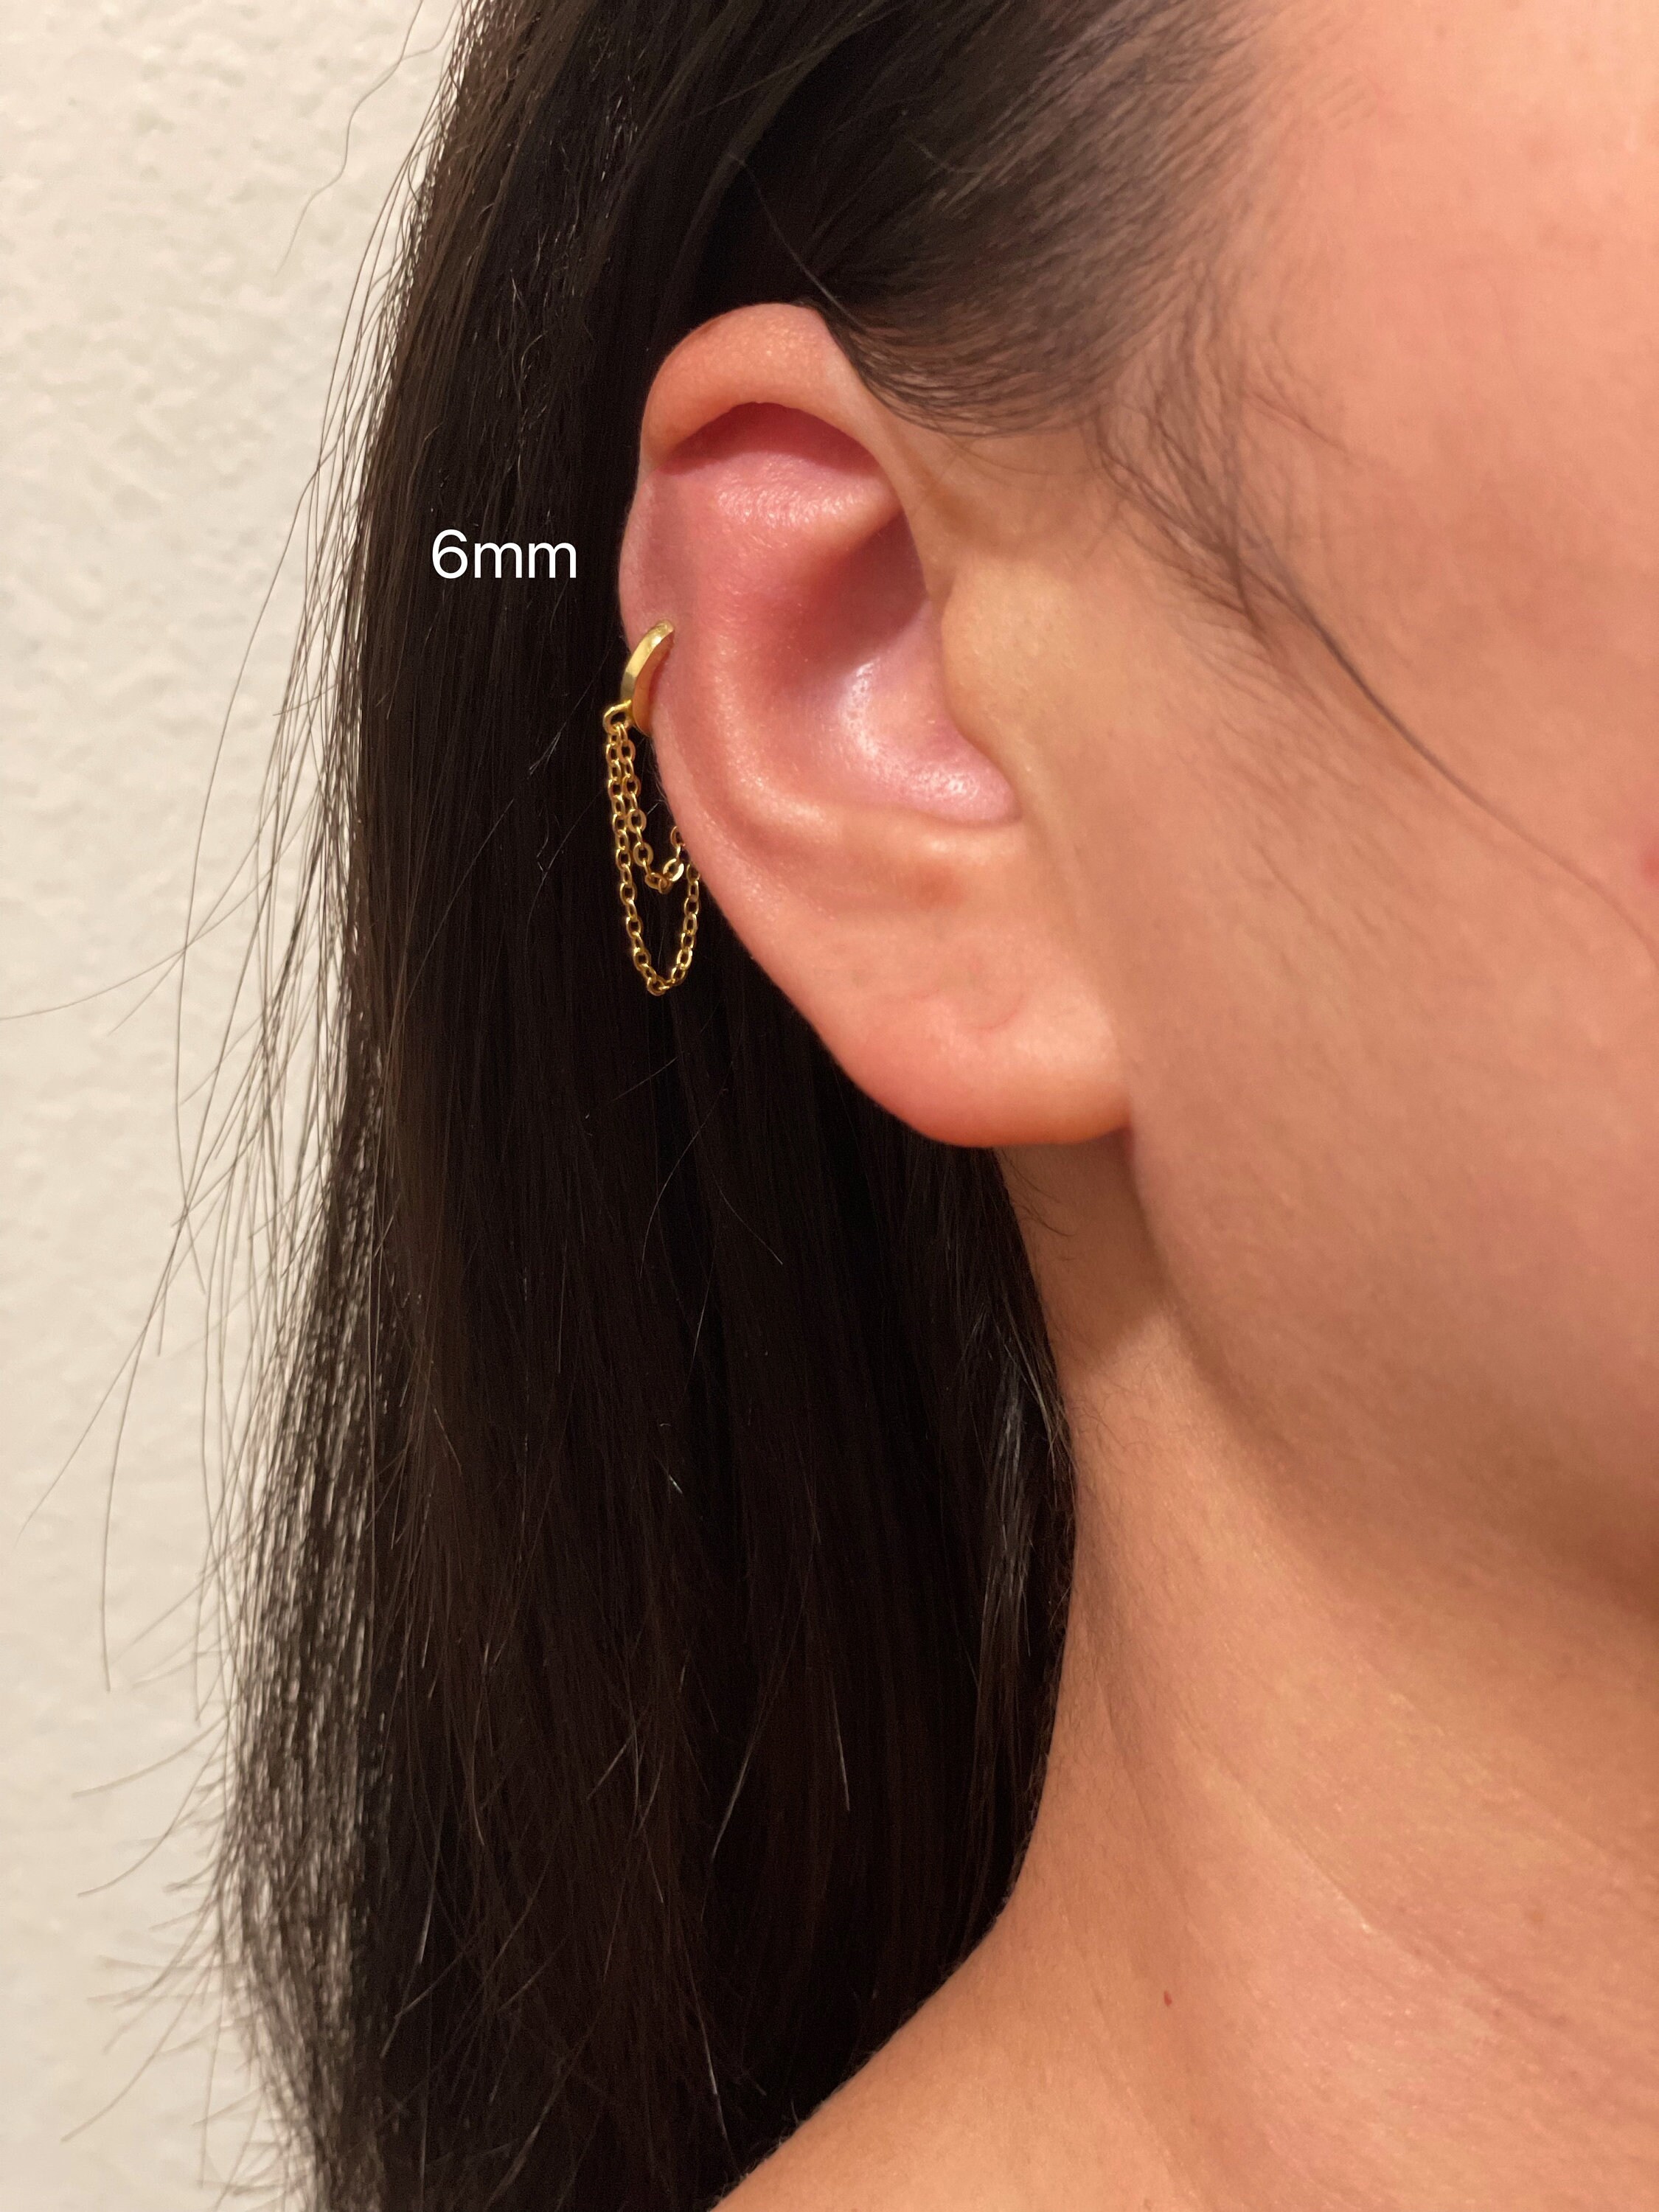 Small Solid 18k Yellow Gold Hoop Earrings Your Choice 8mm 10mm or 12mm in  24 Gauge or 22 Gauge Handmade Hypoallergenic Hoops Sensitive Ears Huggies